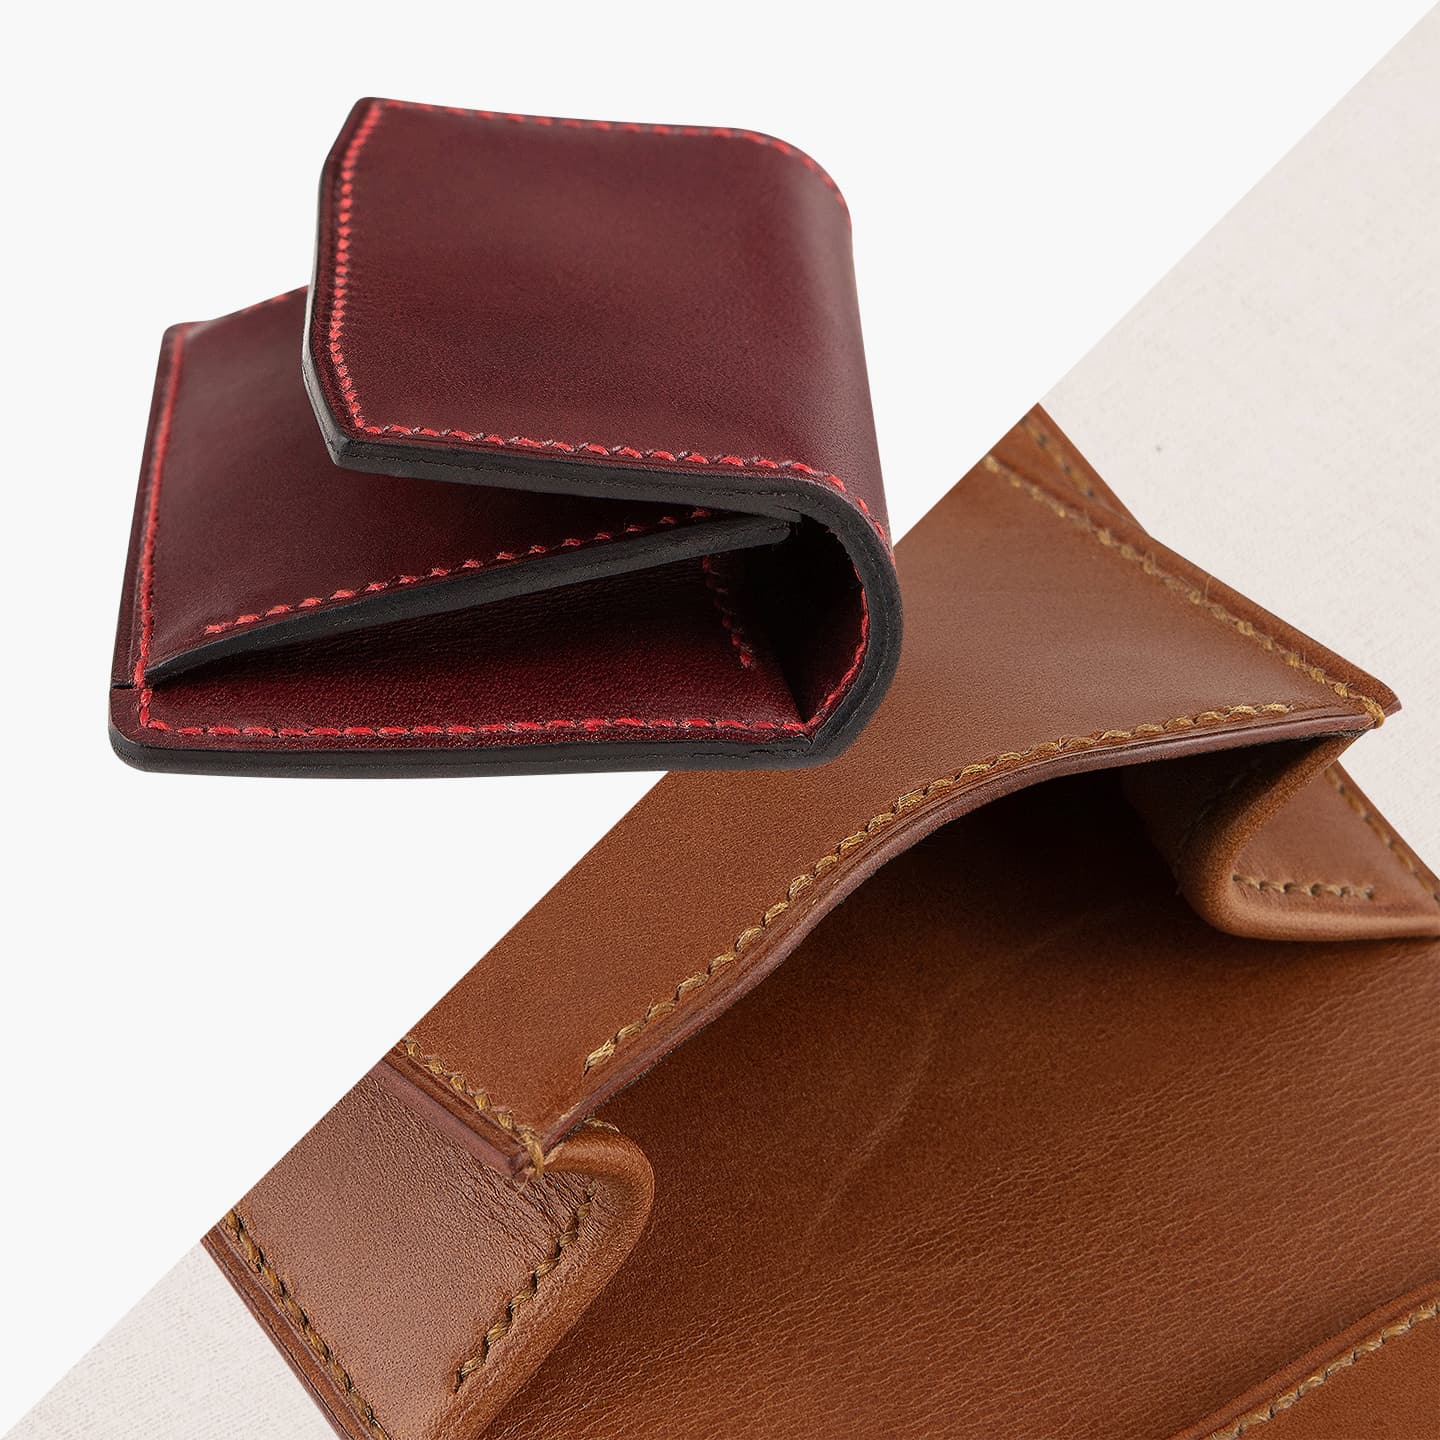 ブッテーロ コインケース “スペクター” | 大人の財布・ コインケース など拘りの日本製ブランドなら Mens Leather Store